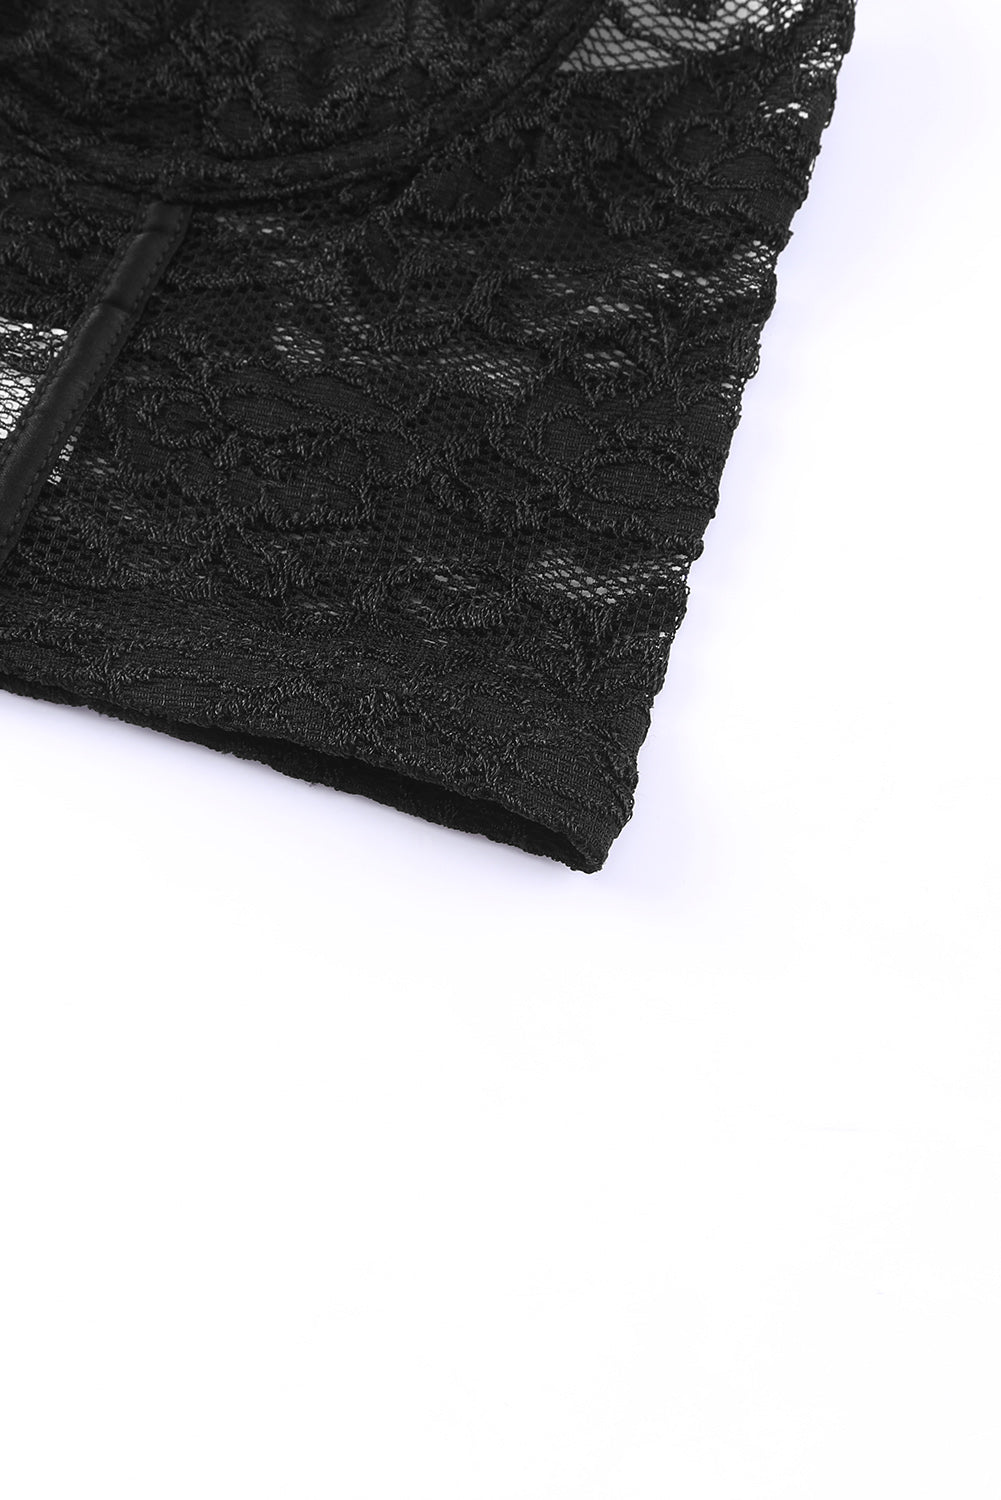 Black Soft Bone Lace Bustier Lingerie Set